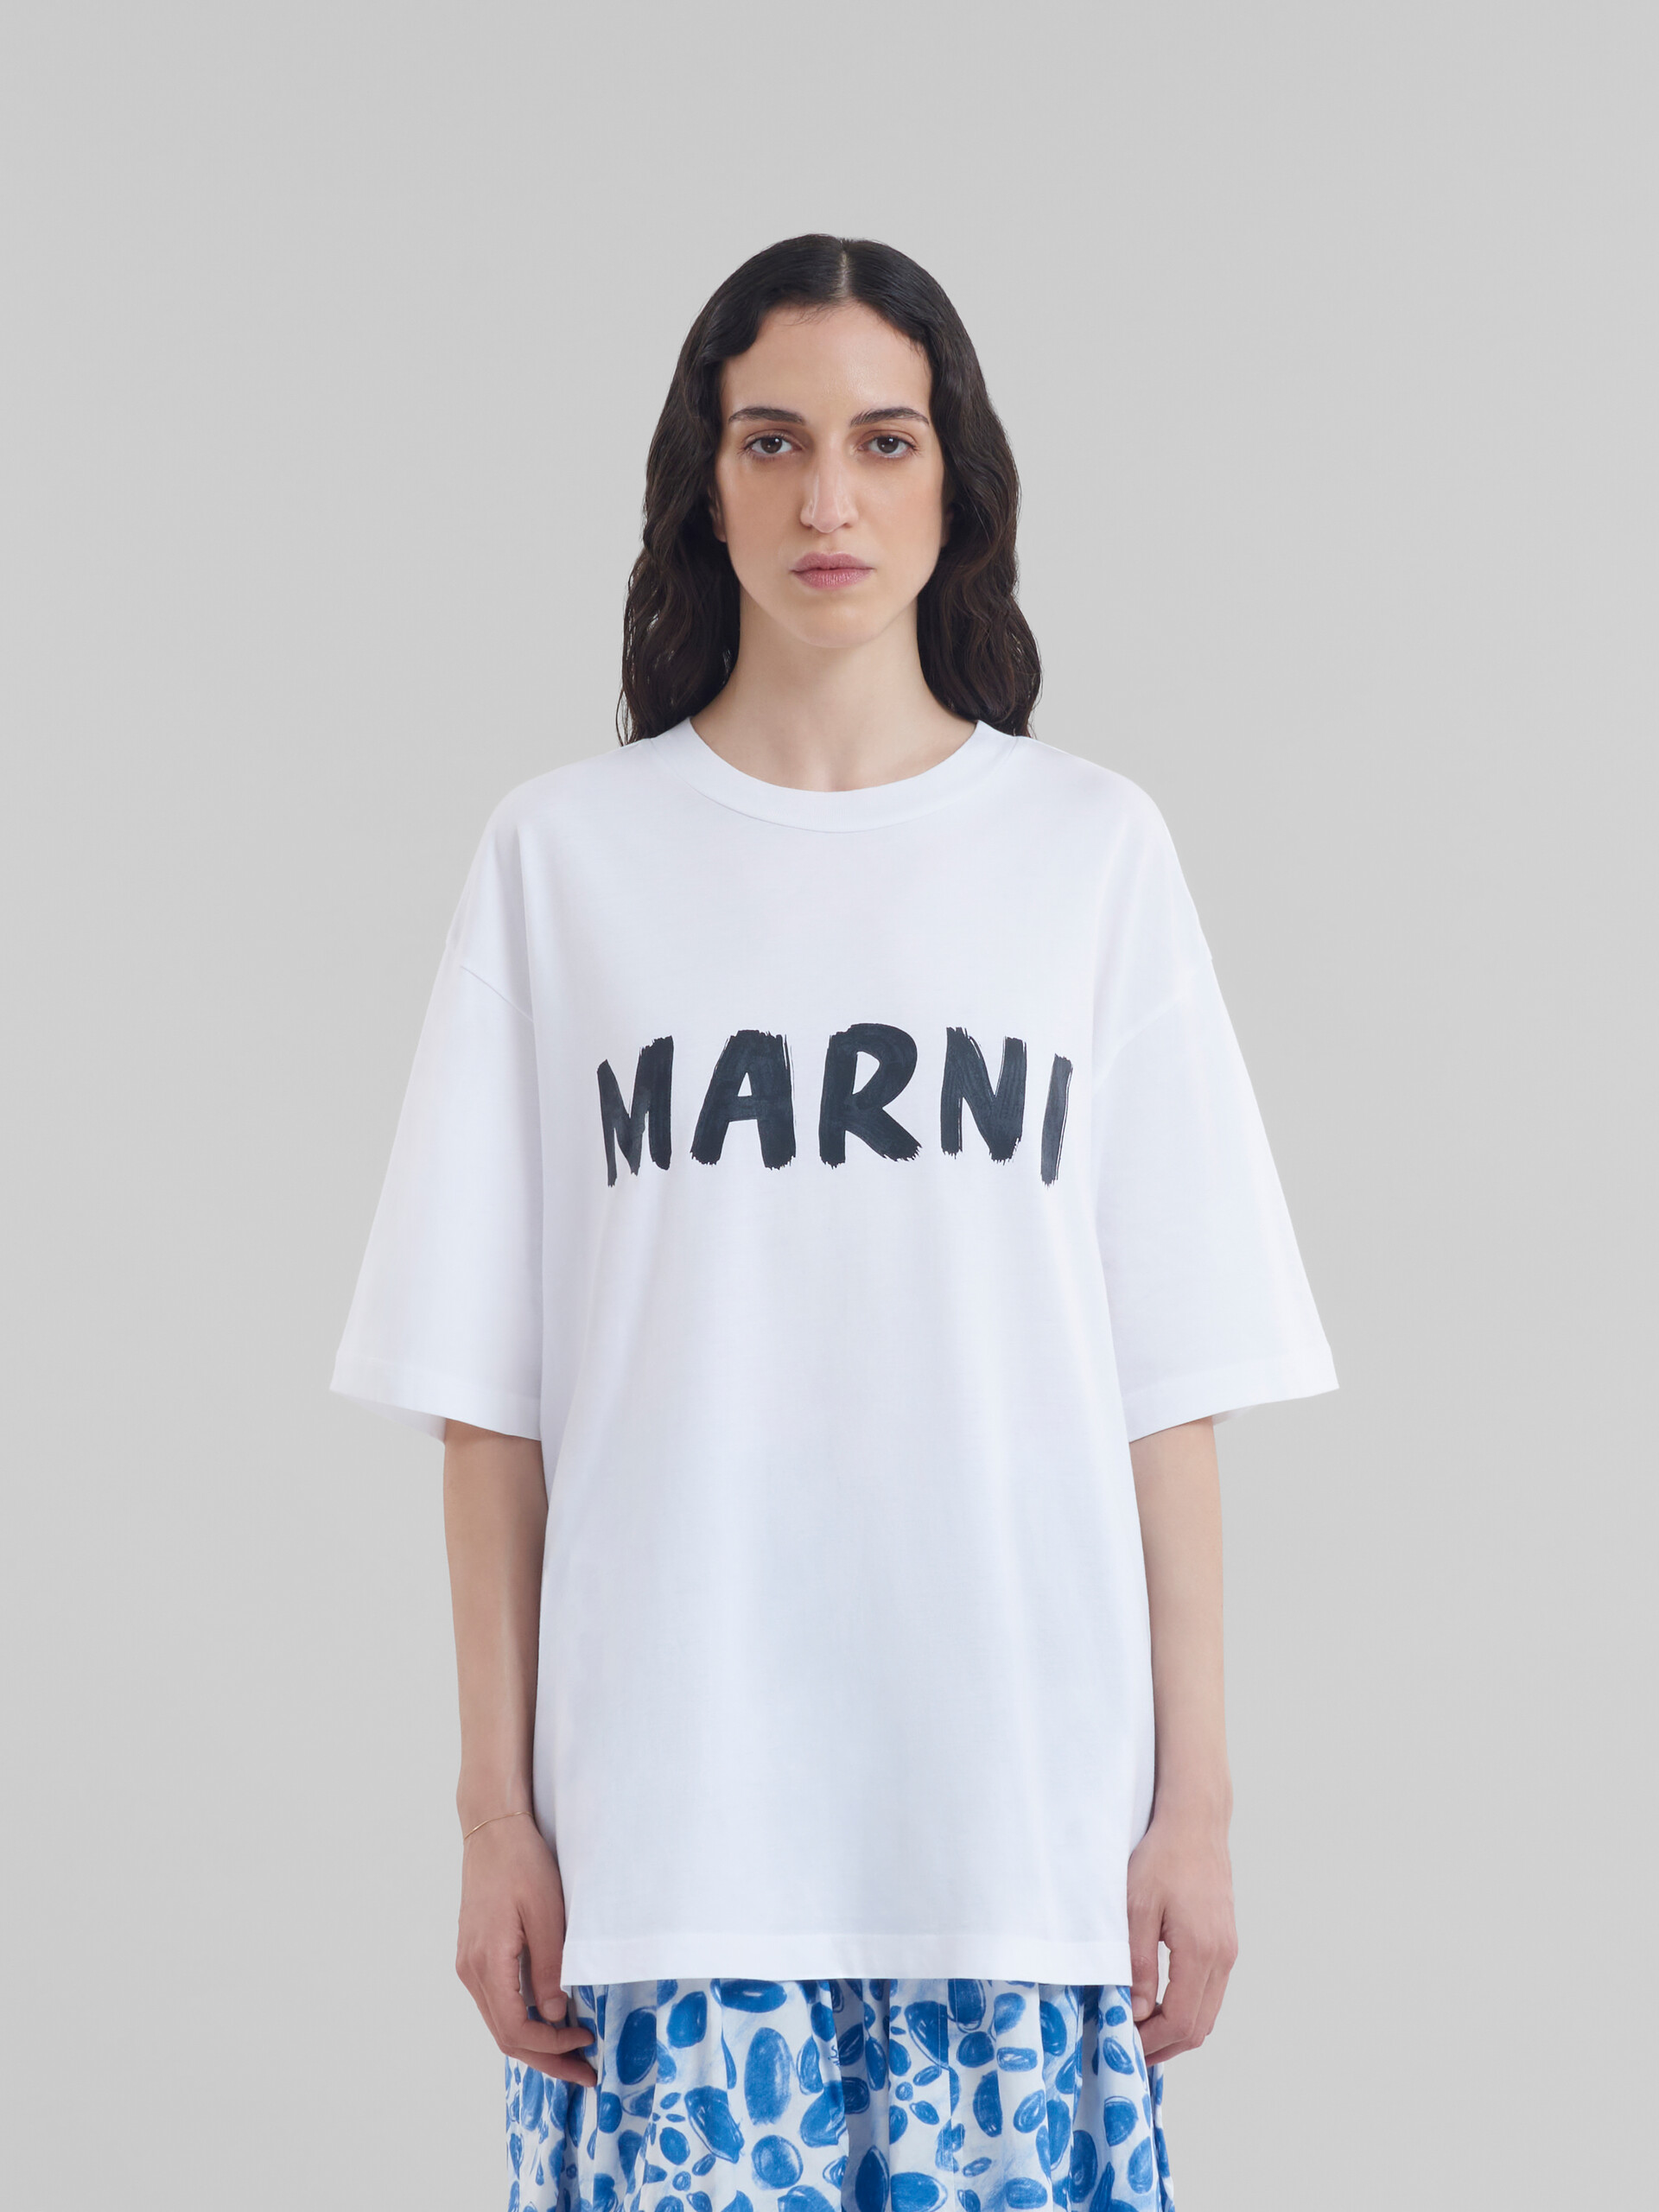 マルニ MARNI Tシャツ付属情報について